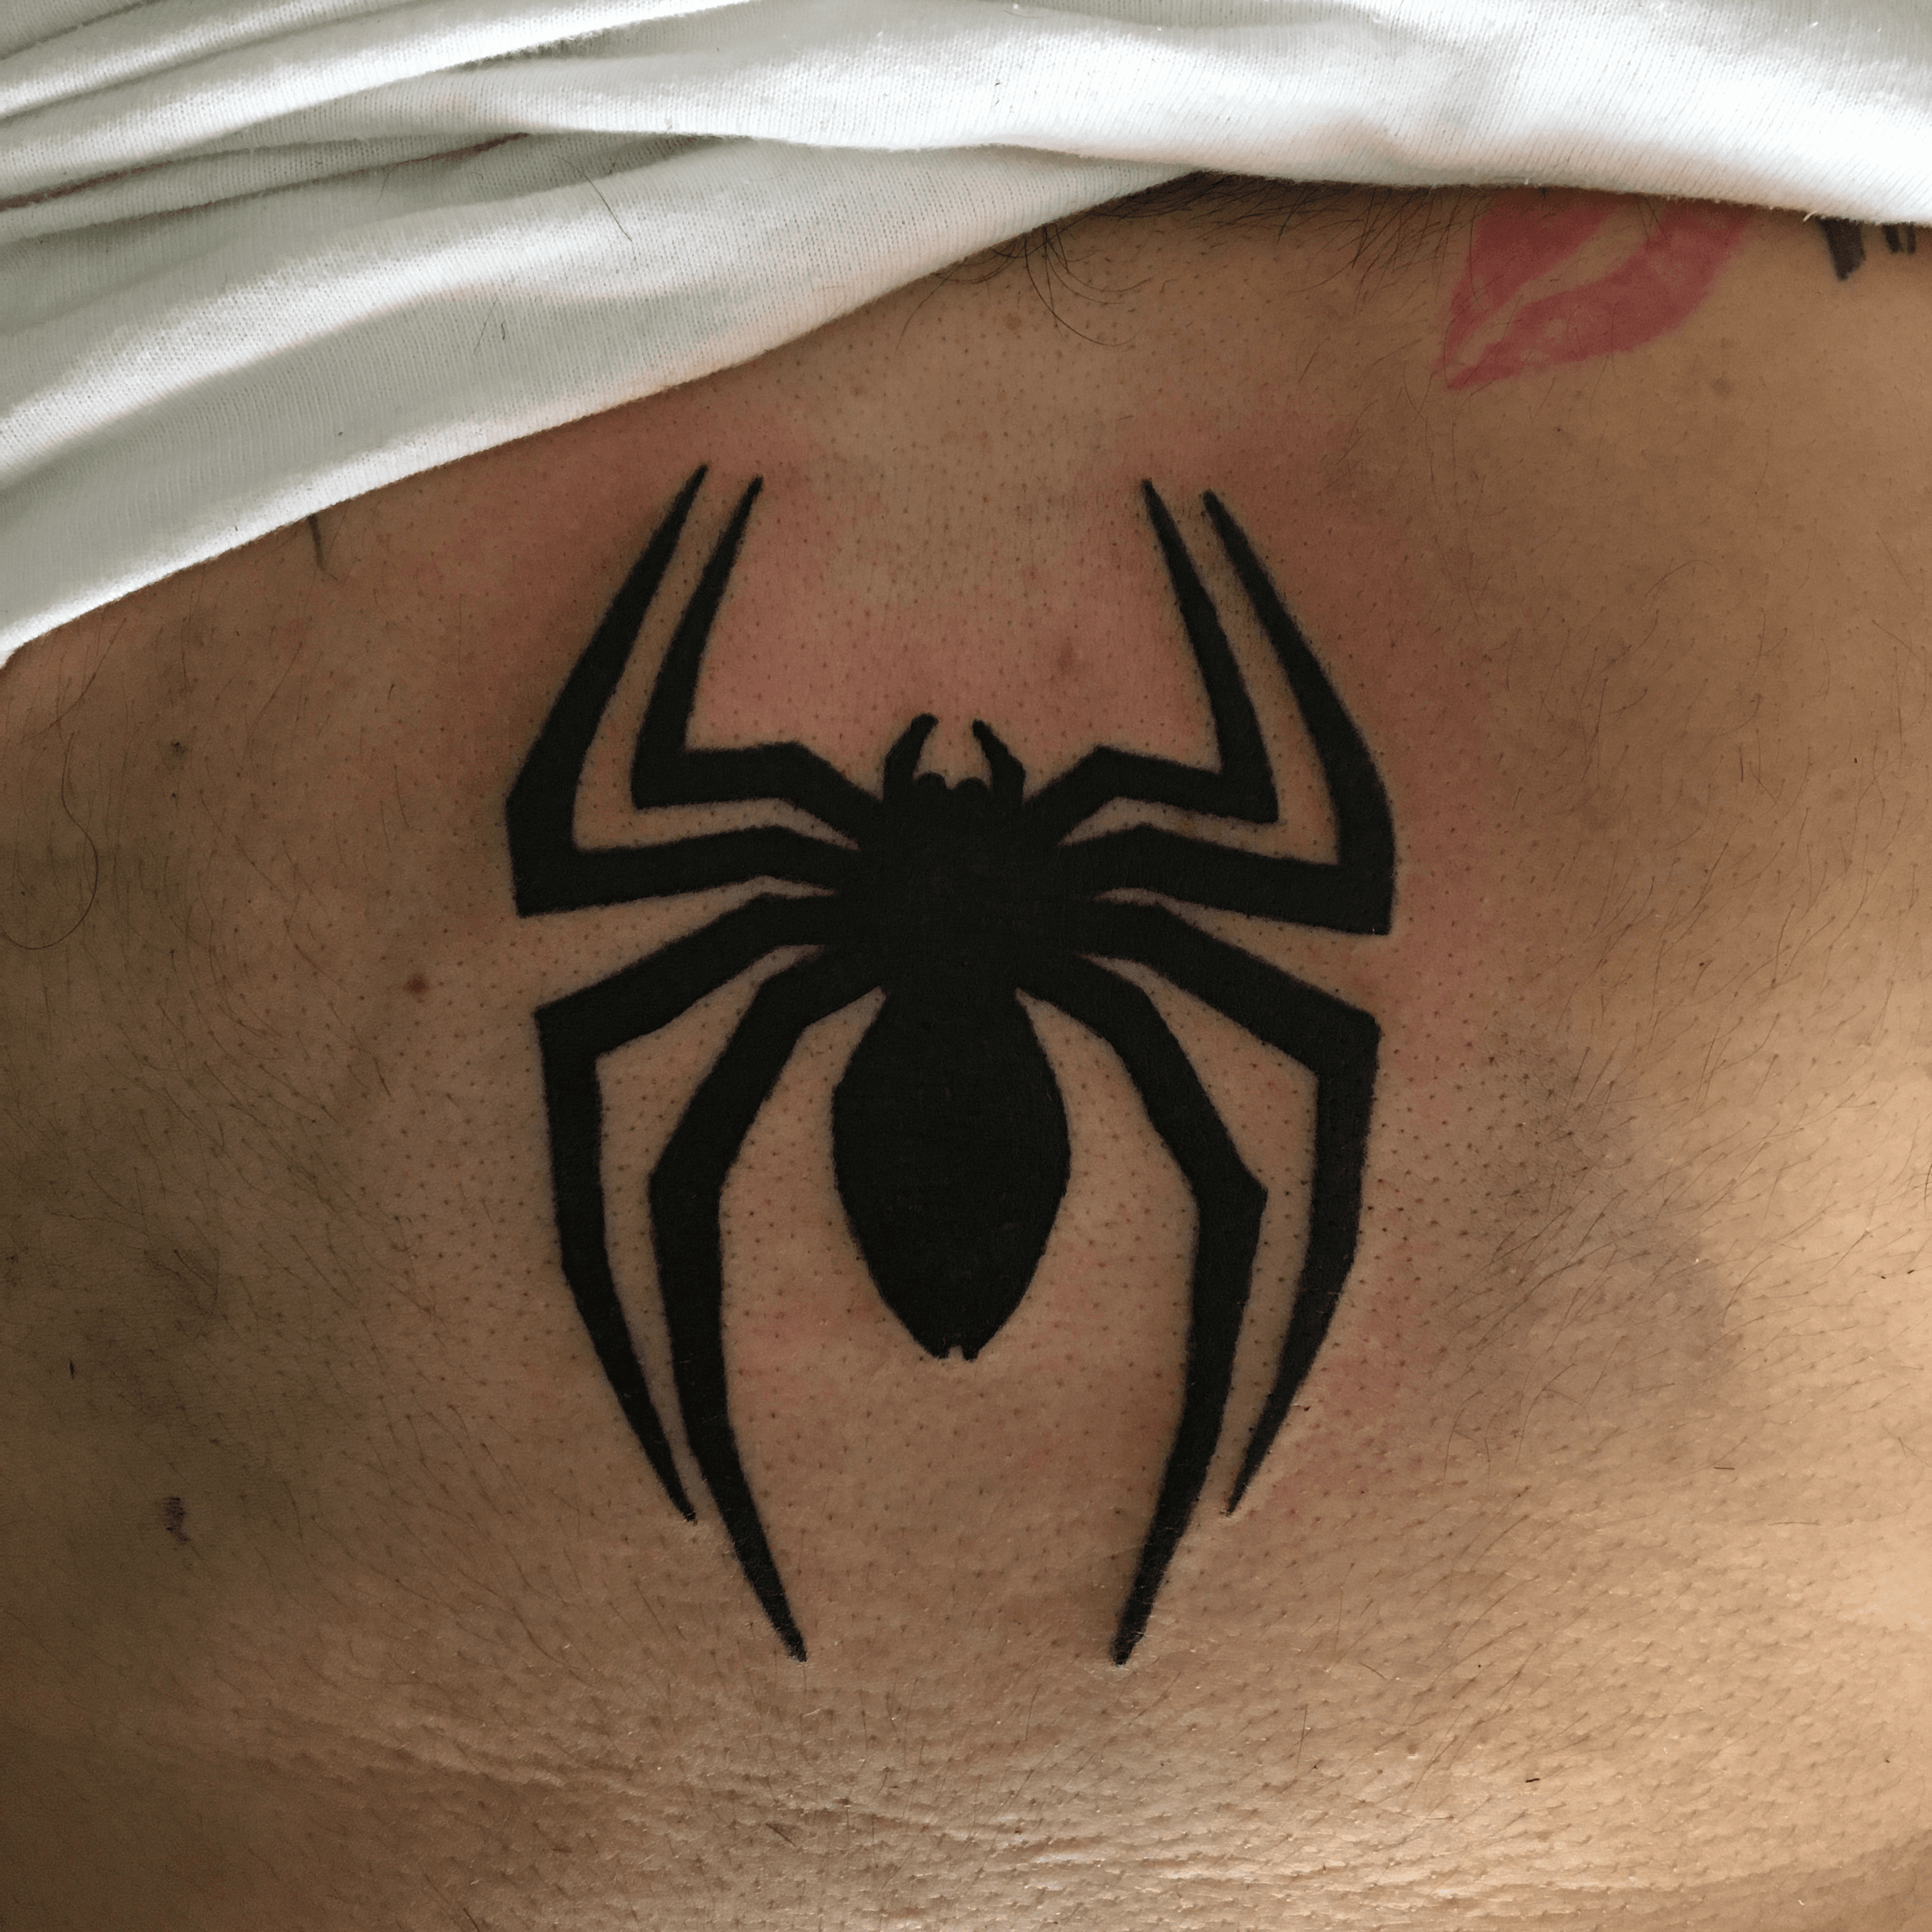 Tattoo uploaded by Louis Pastrana • Araña #Spiderman #Spidermantattoos # Araña • Tattoodo